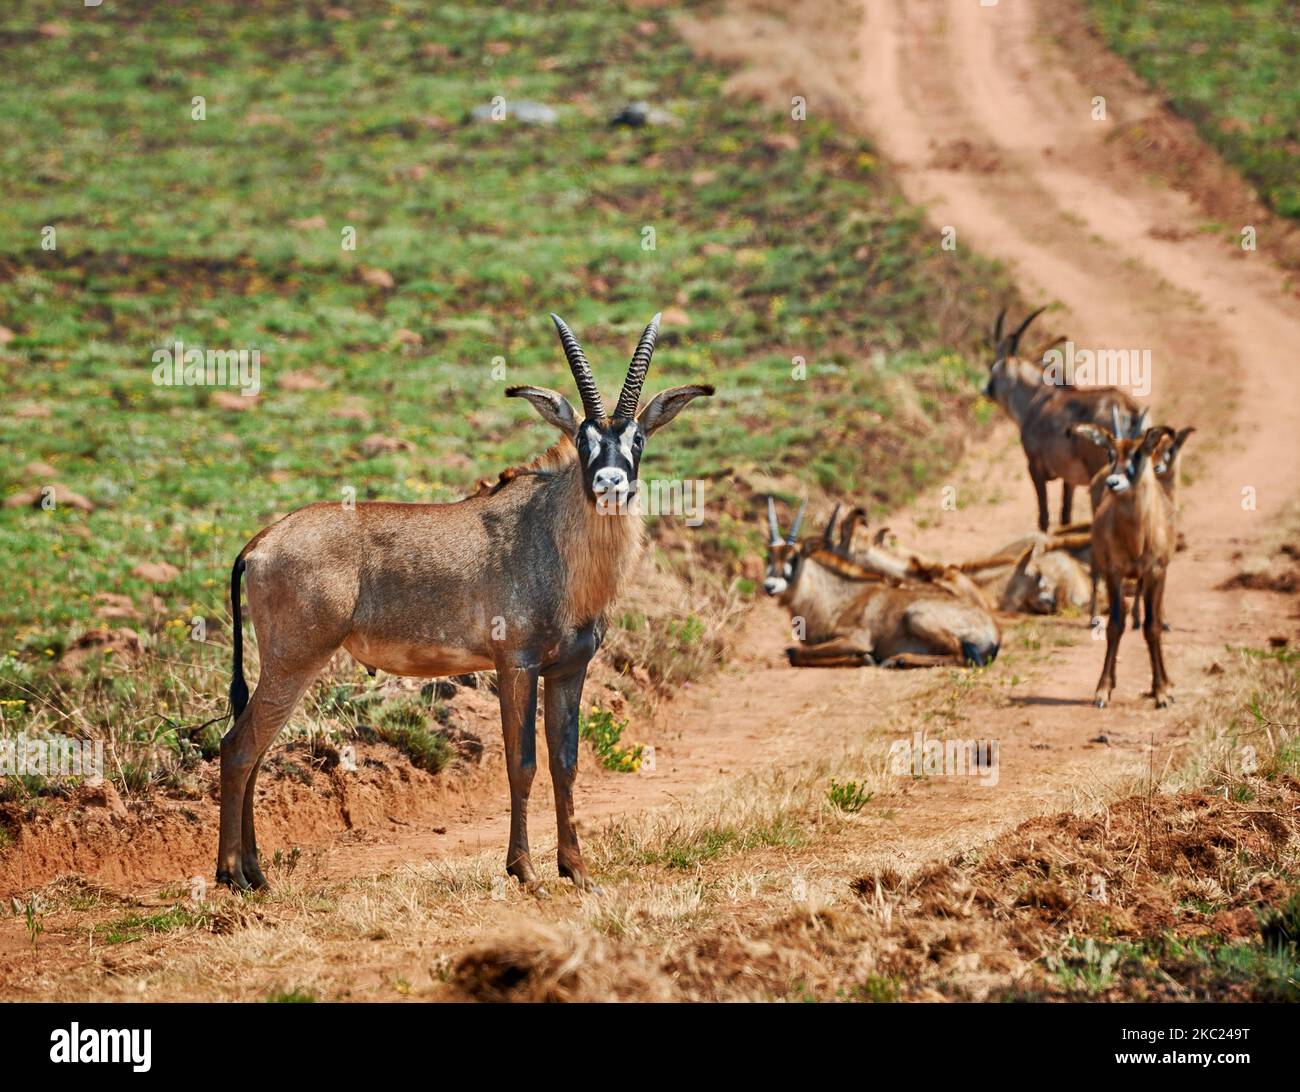 Antelope de Roan, Hippotragus equinus, plateau de Noika, Malawi, Afrique Banque D'Images